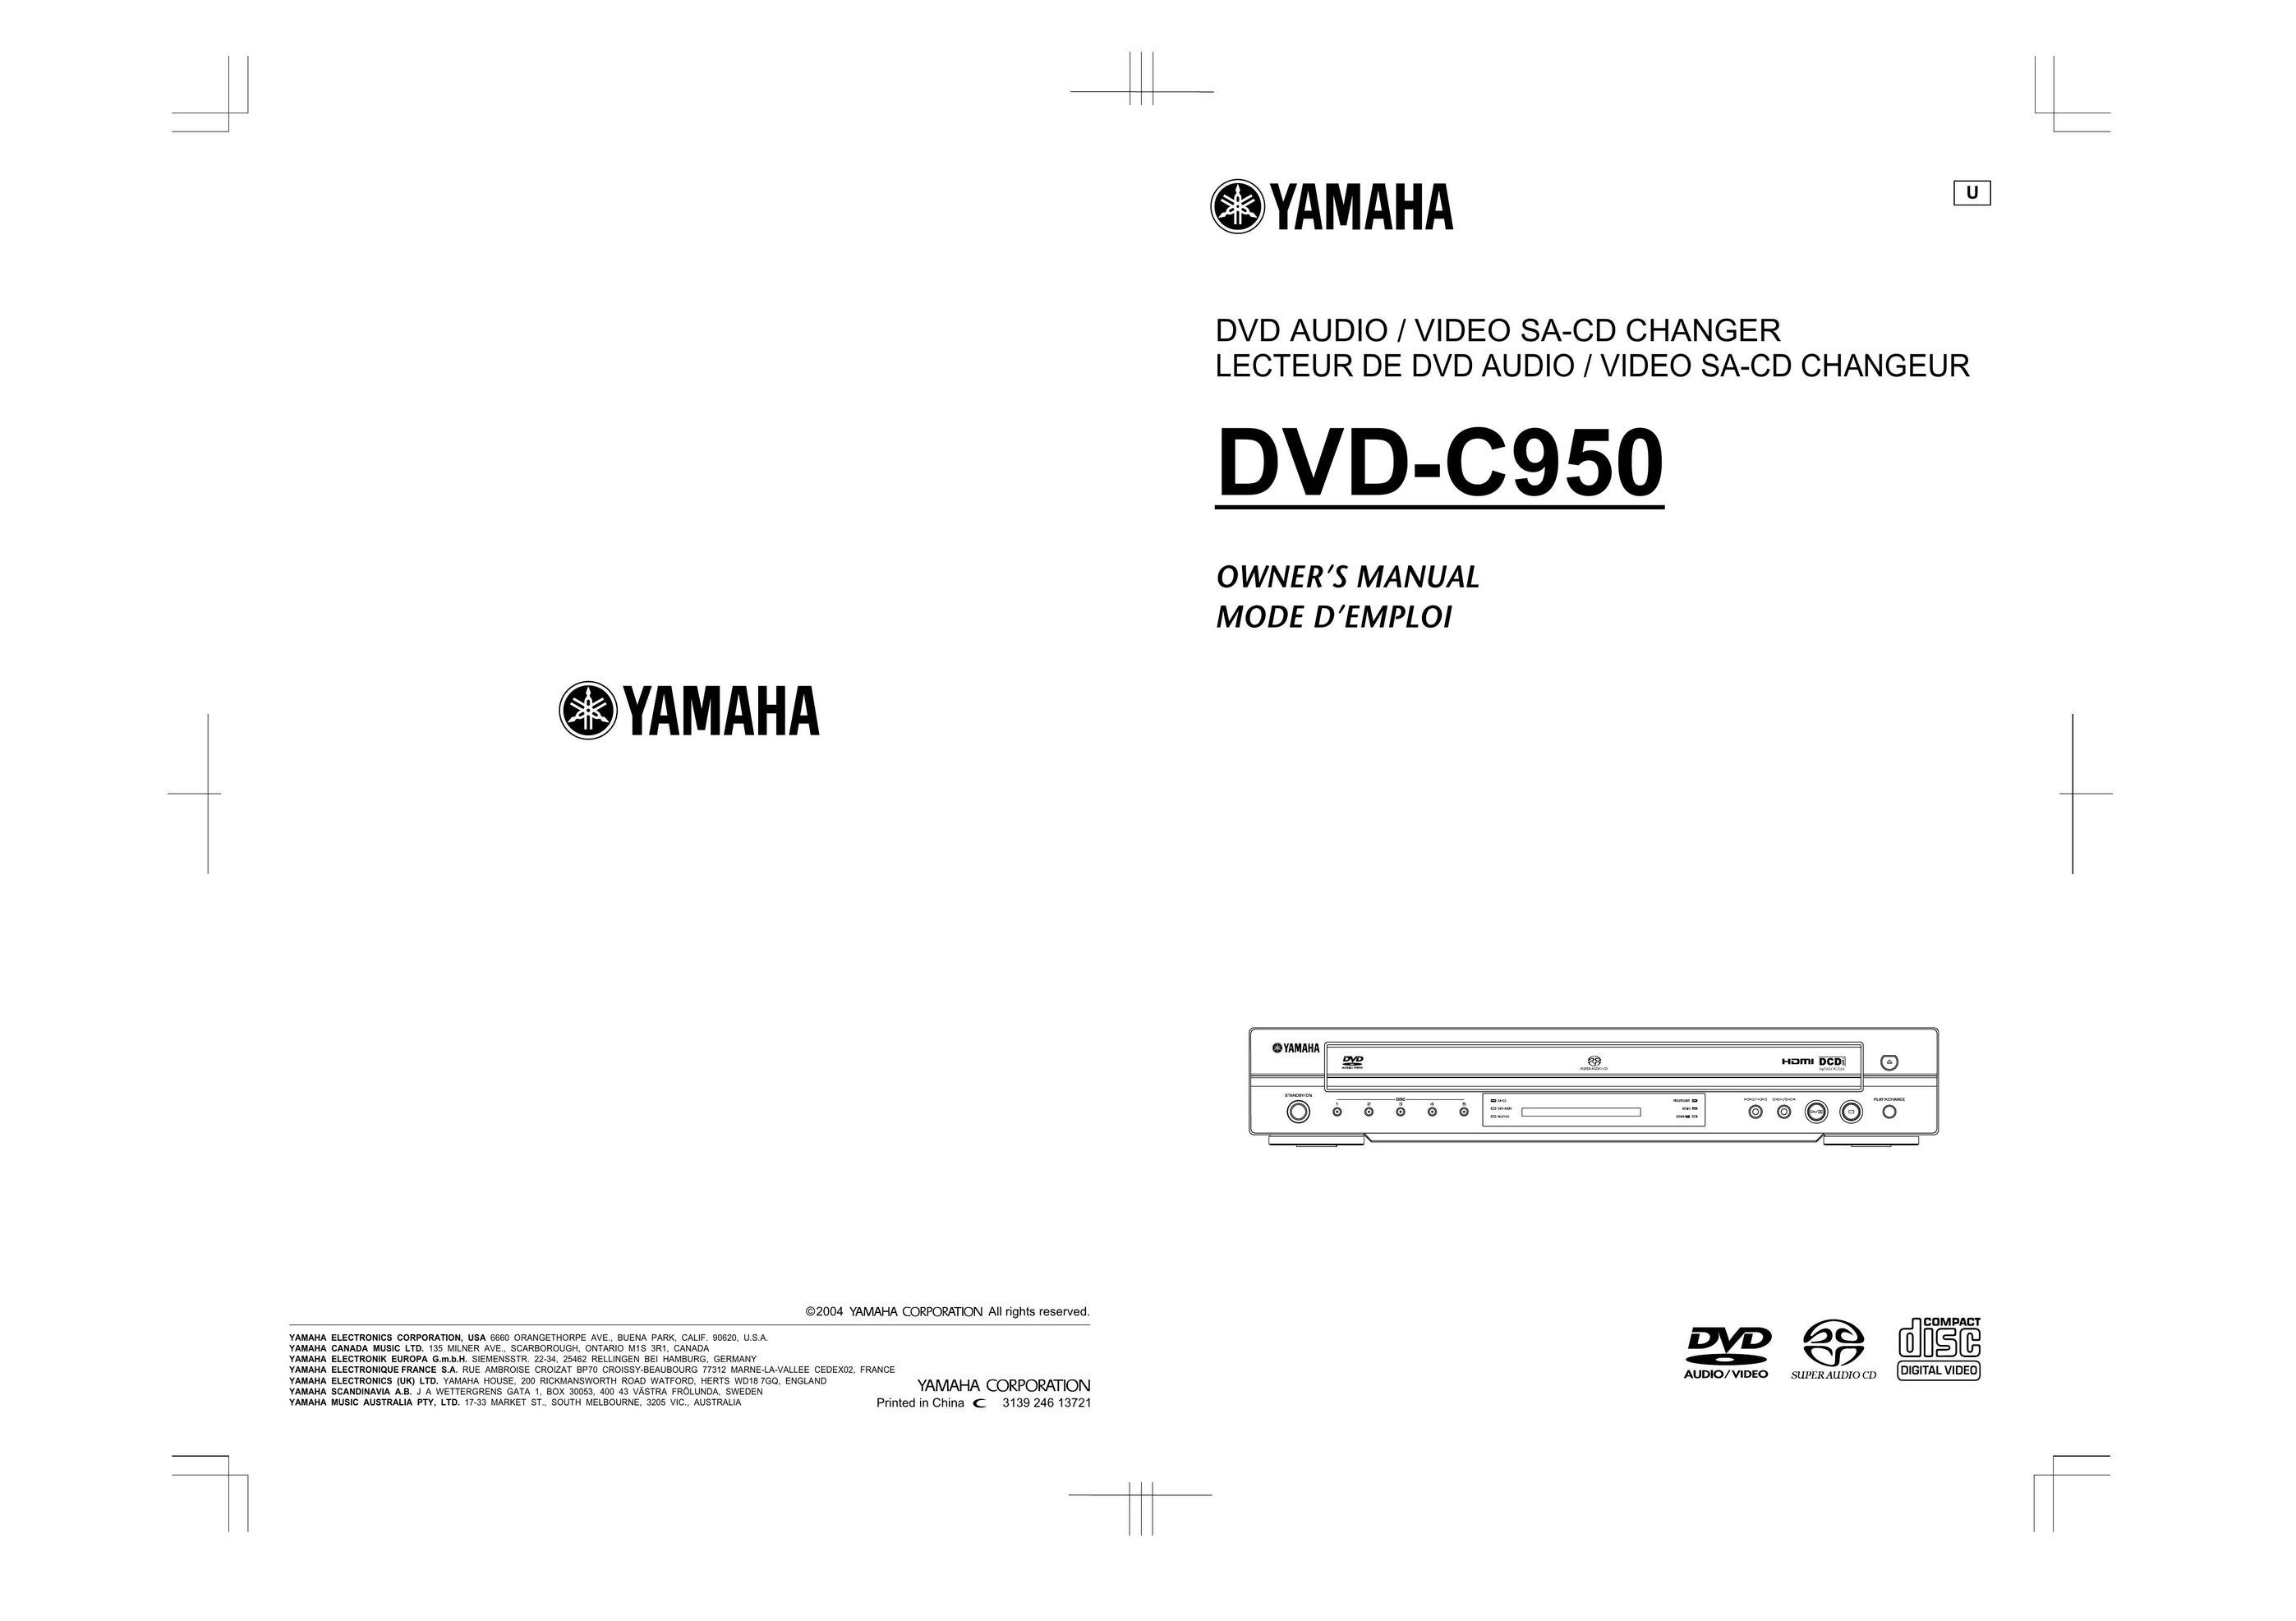 Yamaha DVD-C950 DVD Player User Manual